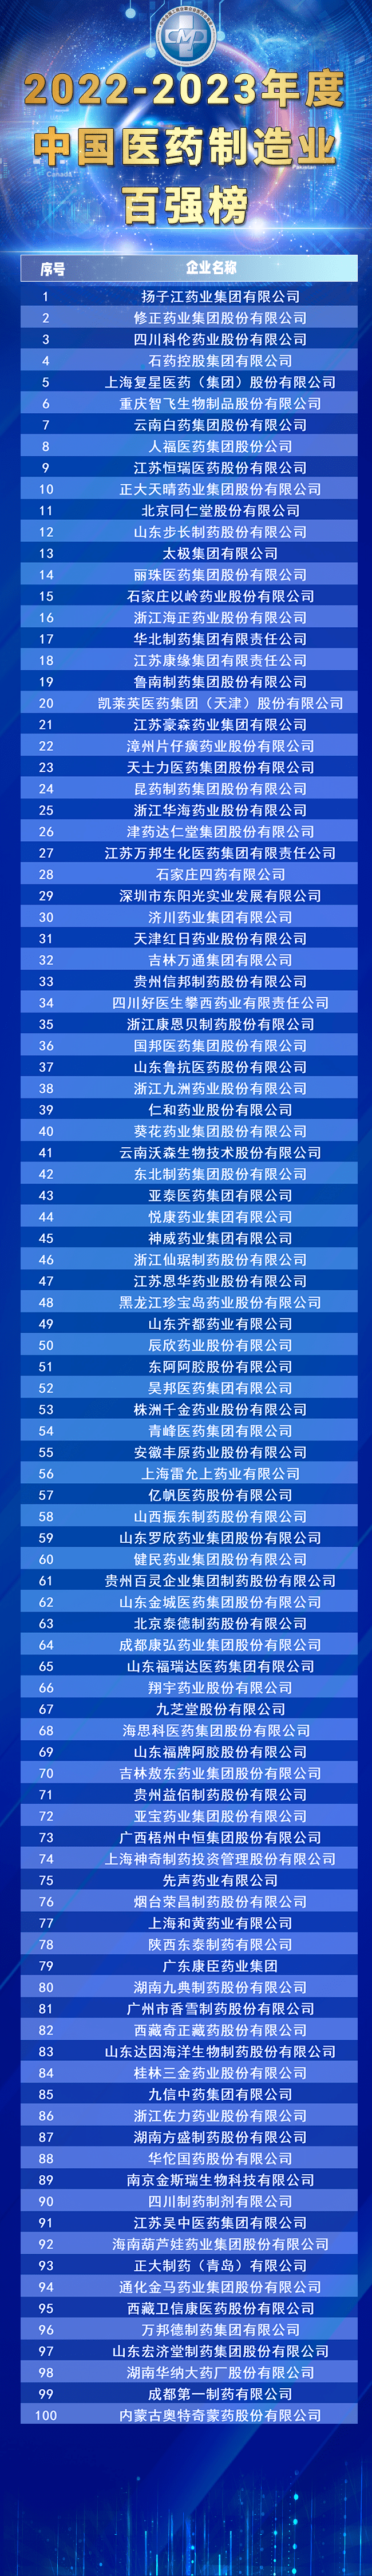 扬子江药业高层名单图片